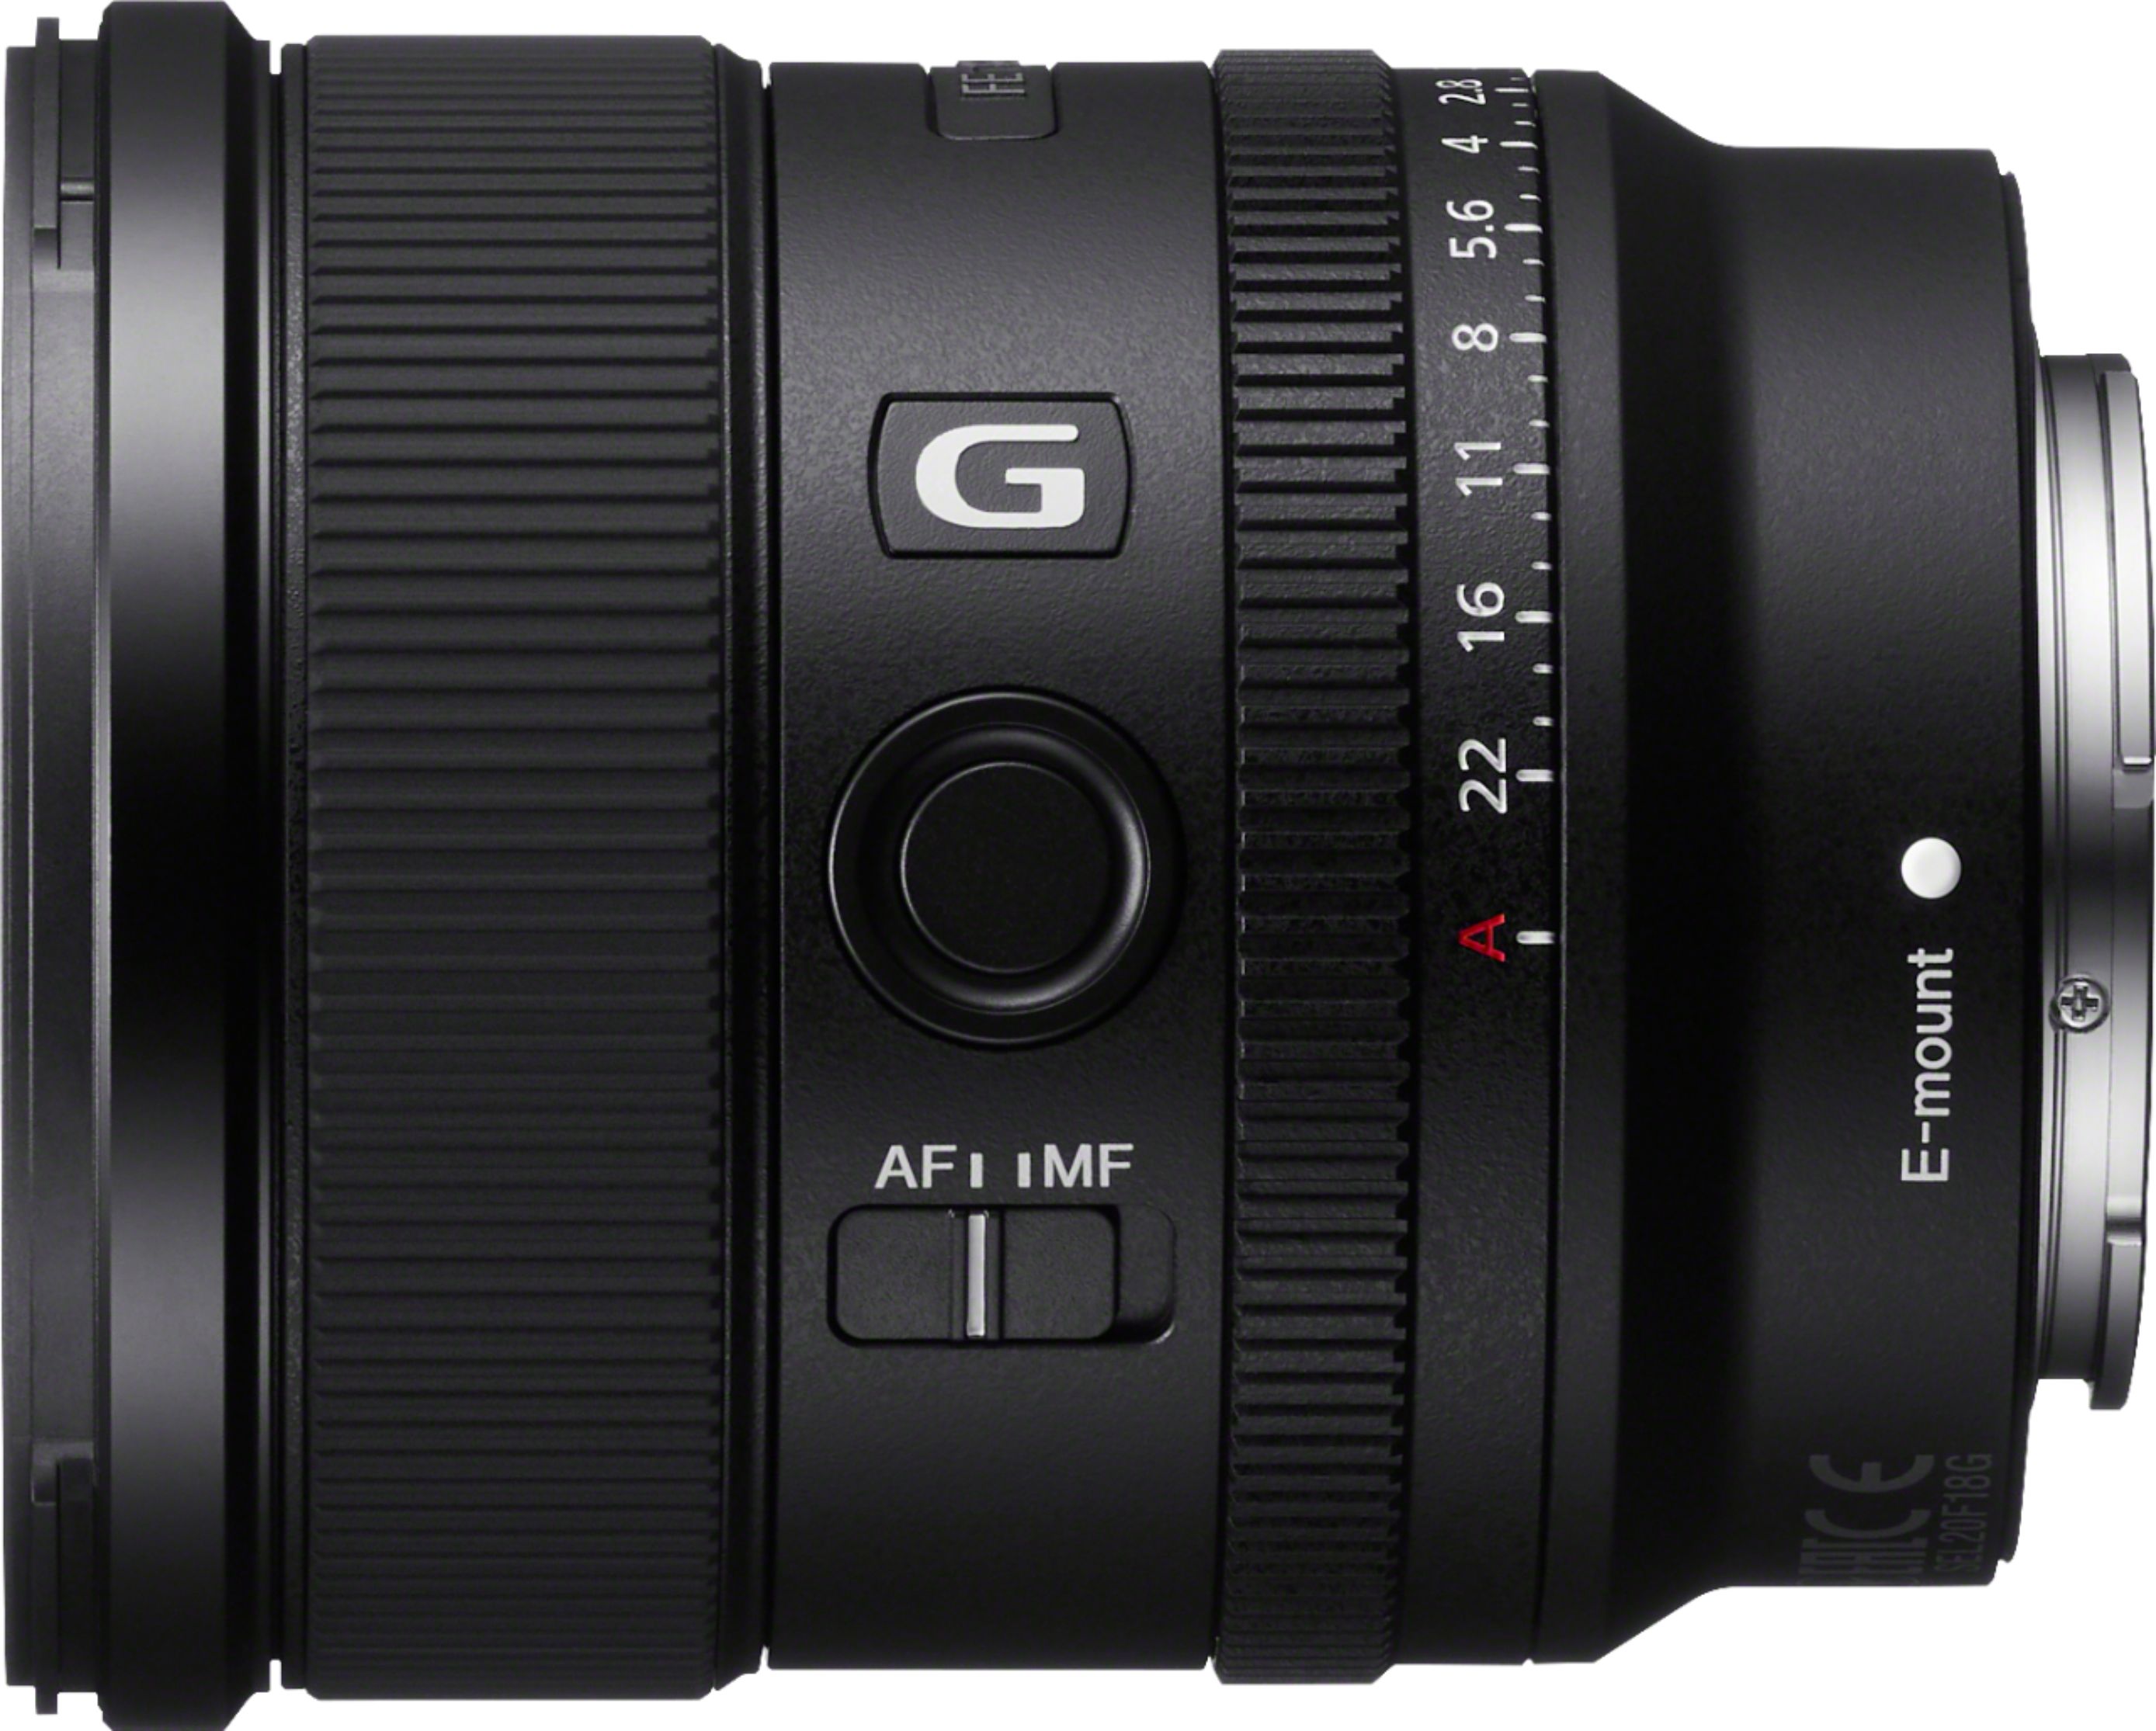 Sony - Fe 20mm f/1.8 G Lens